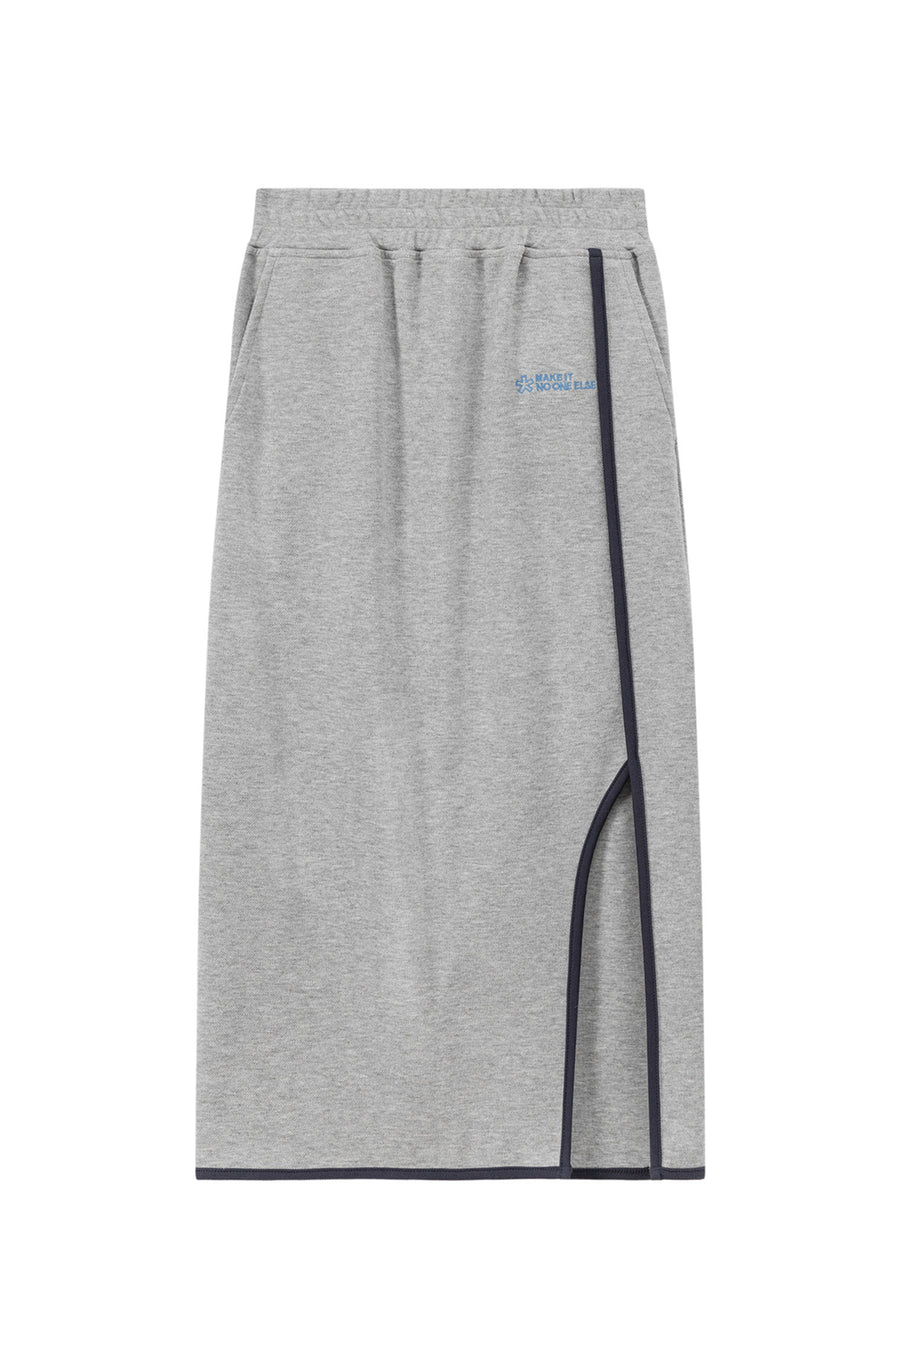 CHUU Side Slit Long Sport Skirt